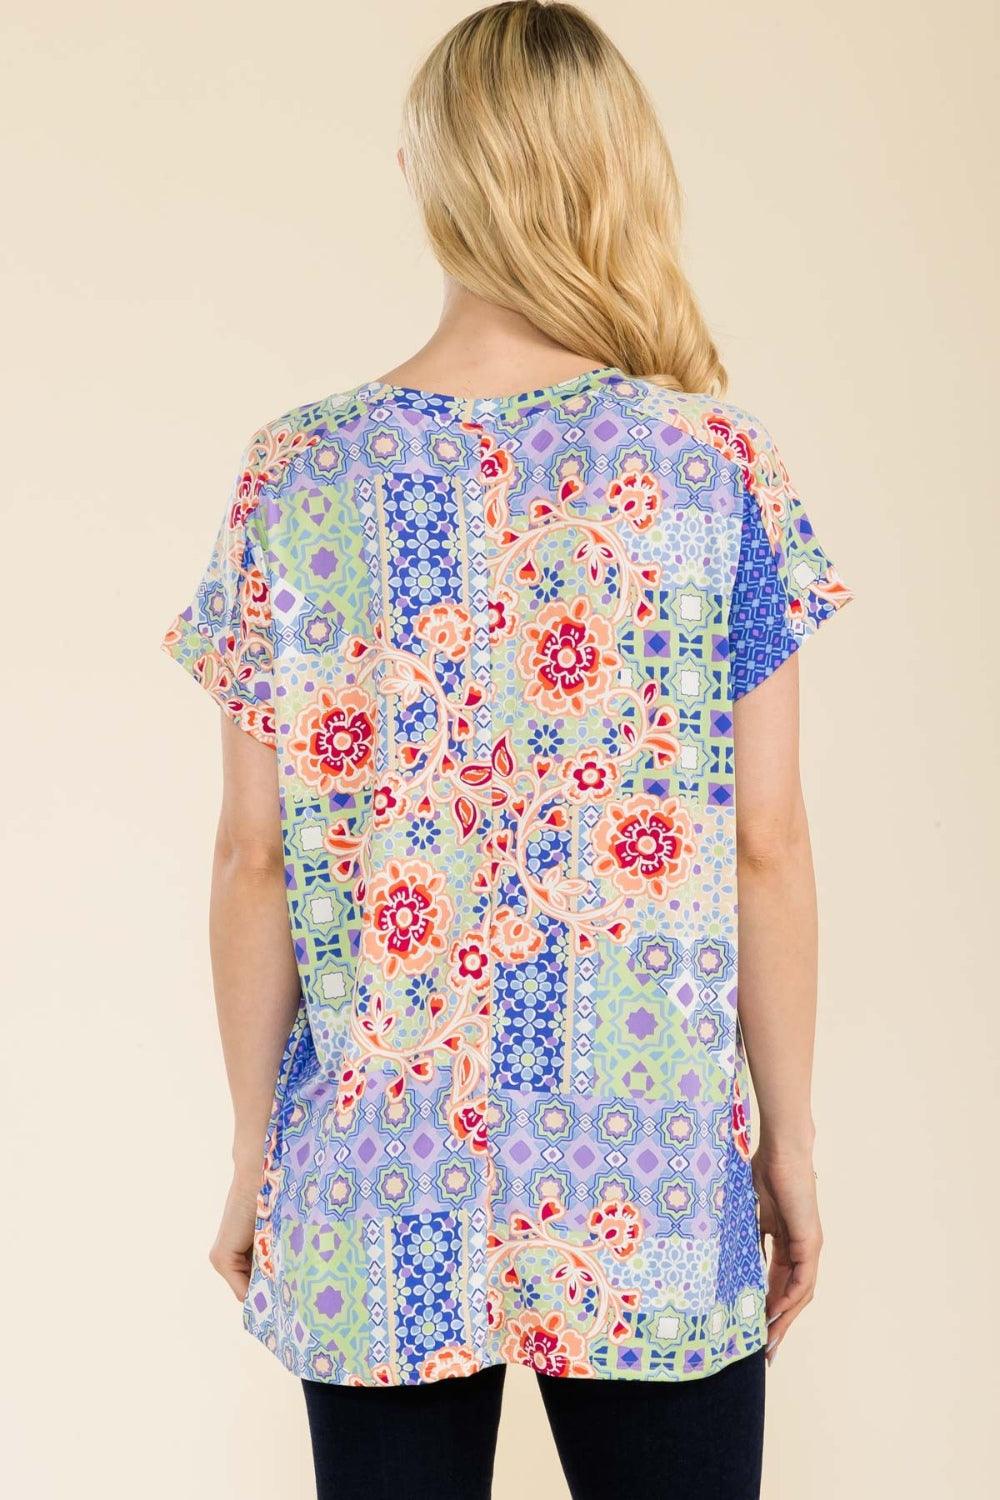 Celeste Full Size Round Neck Short Sleeve Floral T-Shirt - Immenzive